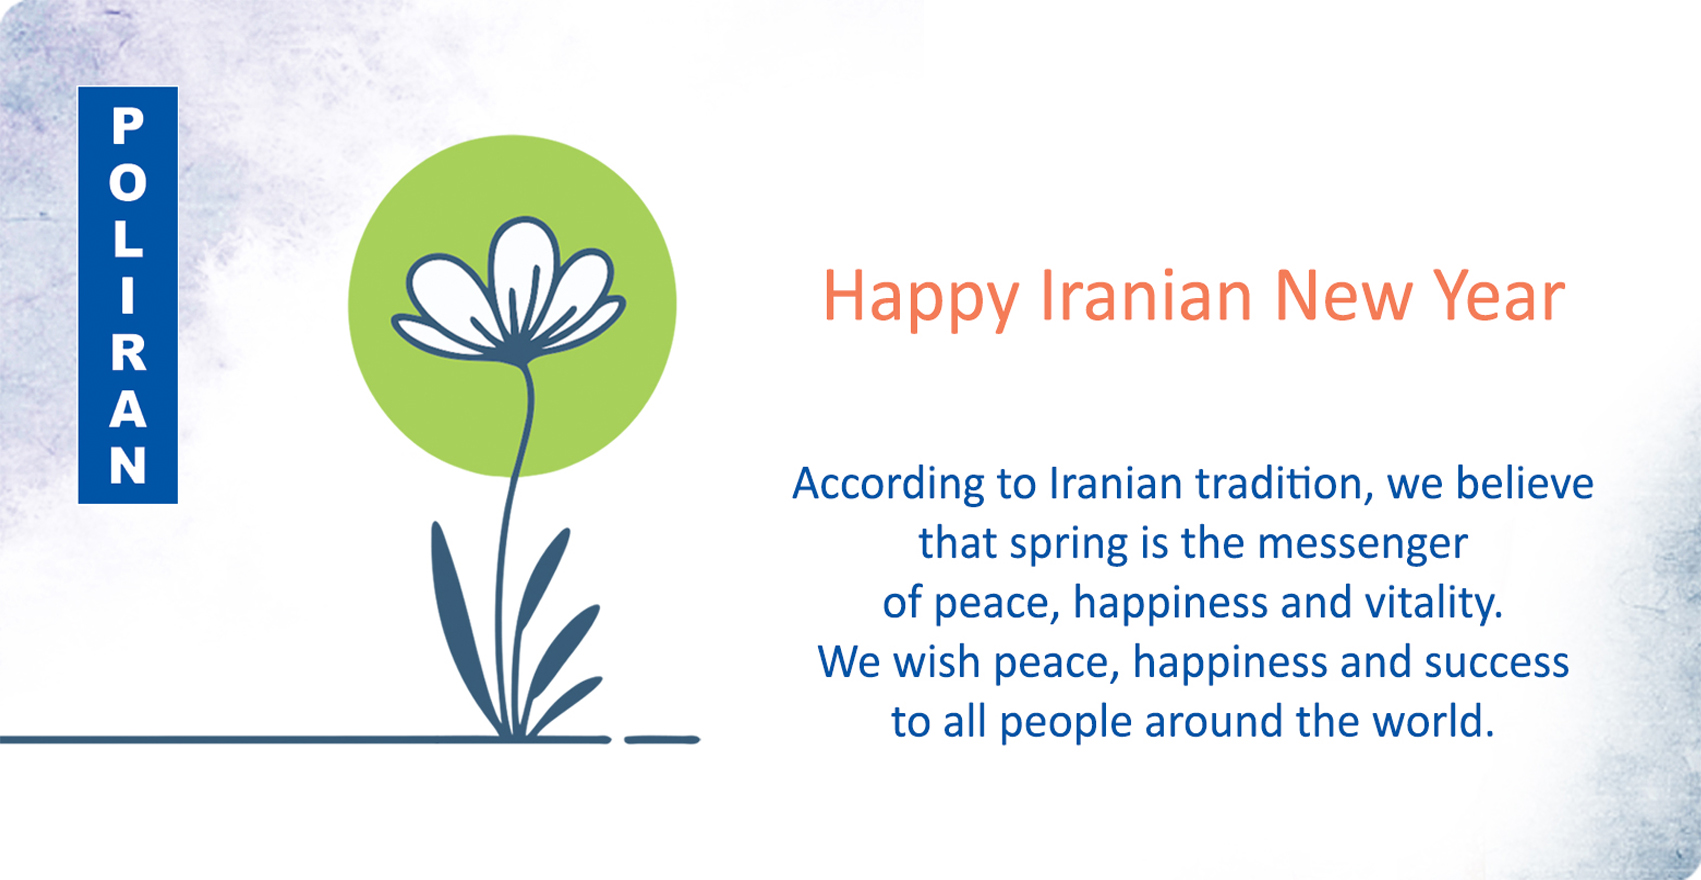 Happy Iranian New Year